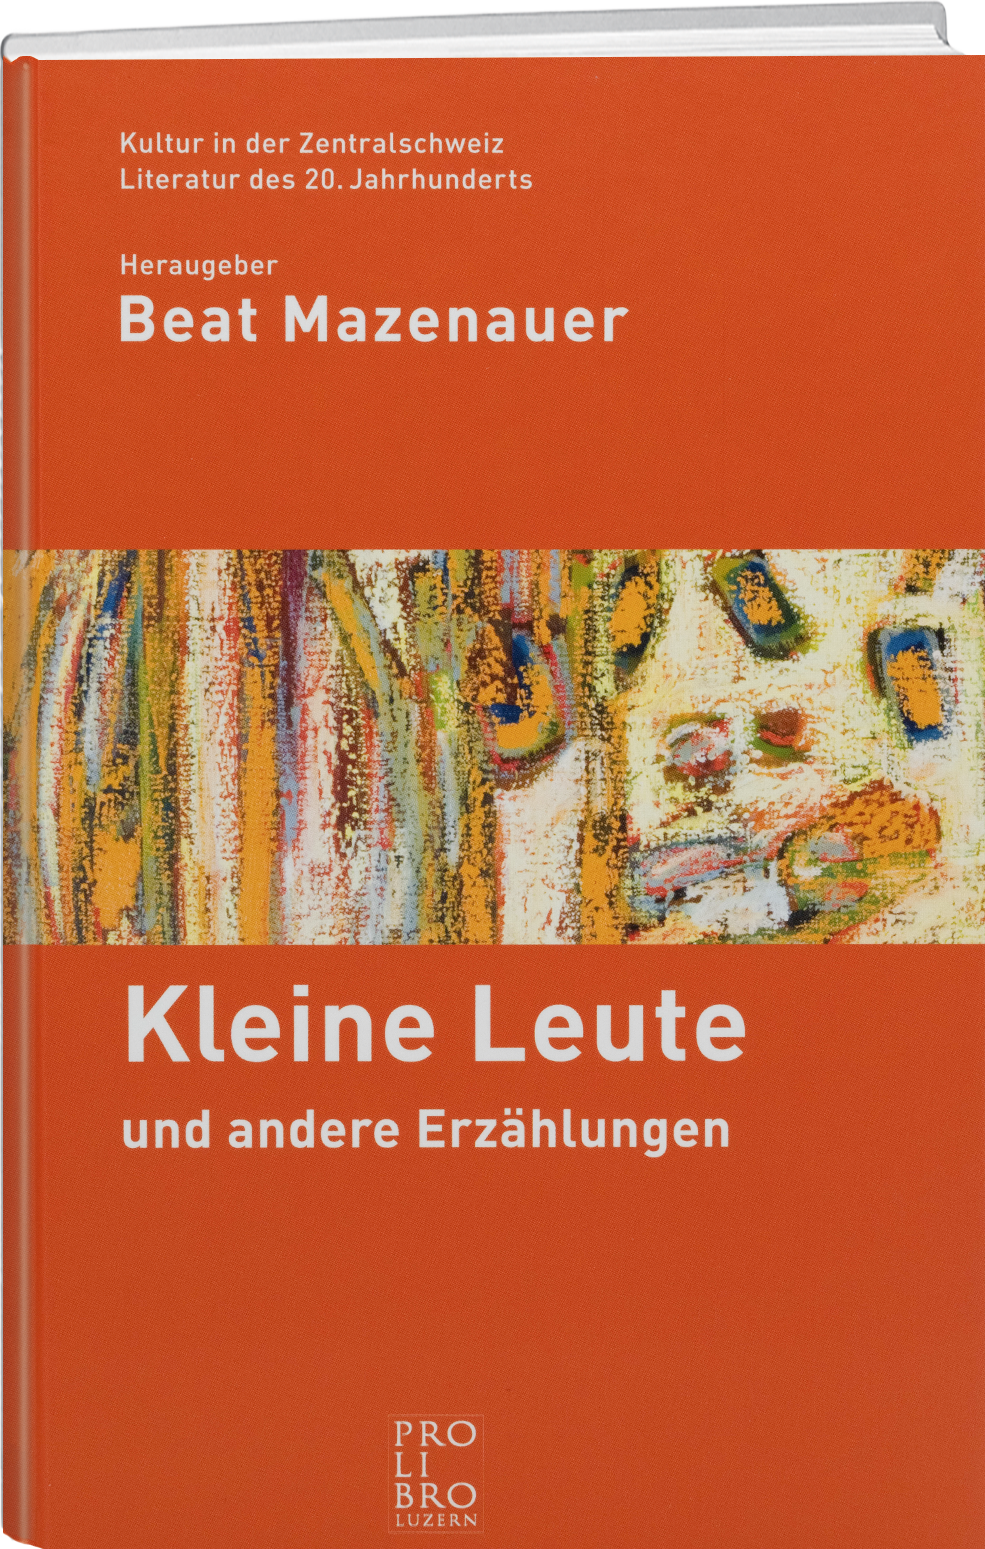 Beat Mazenauer: Kleine Leute - WEBER VERLAG